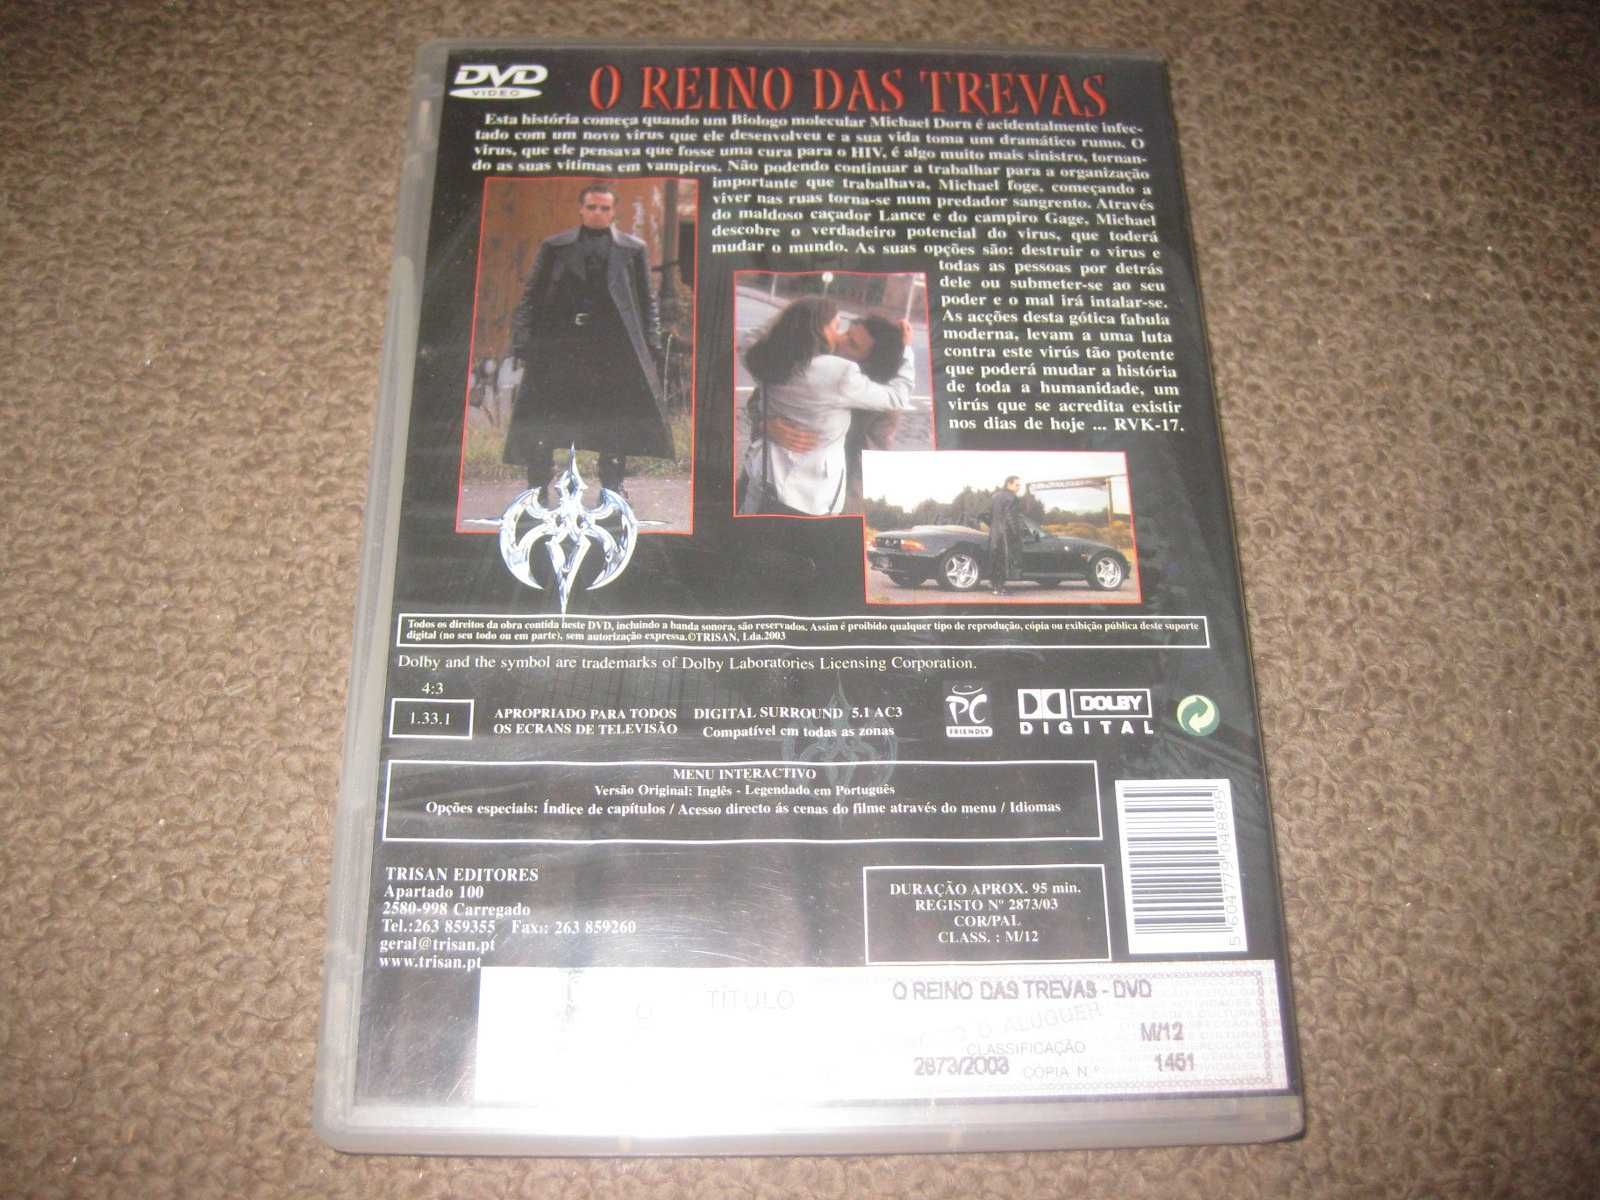 DVD "O Reino das Trevas" com Kelly Dolen